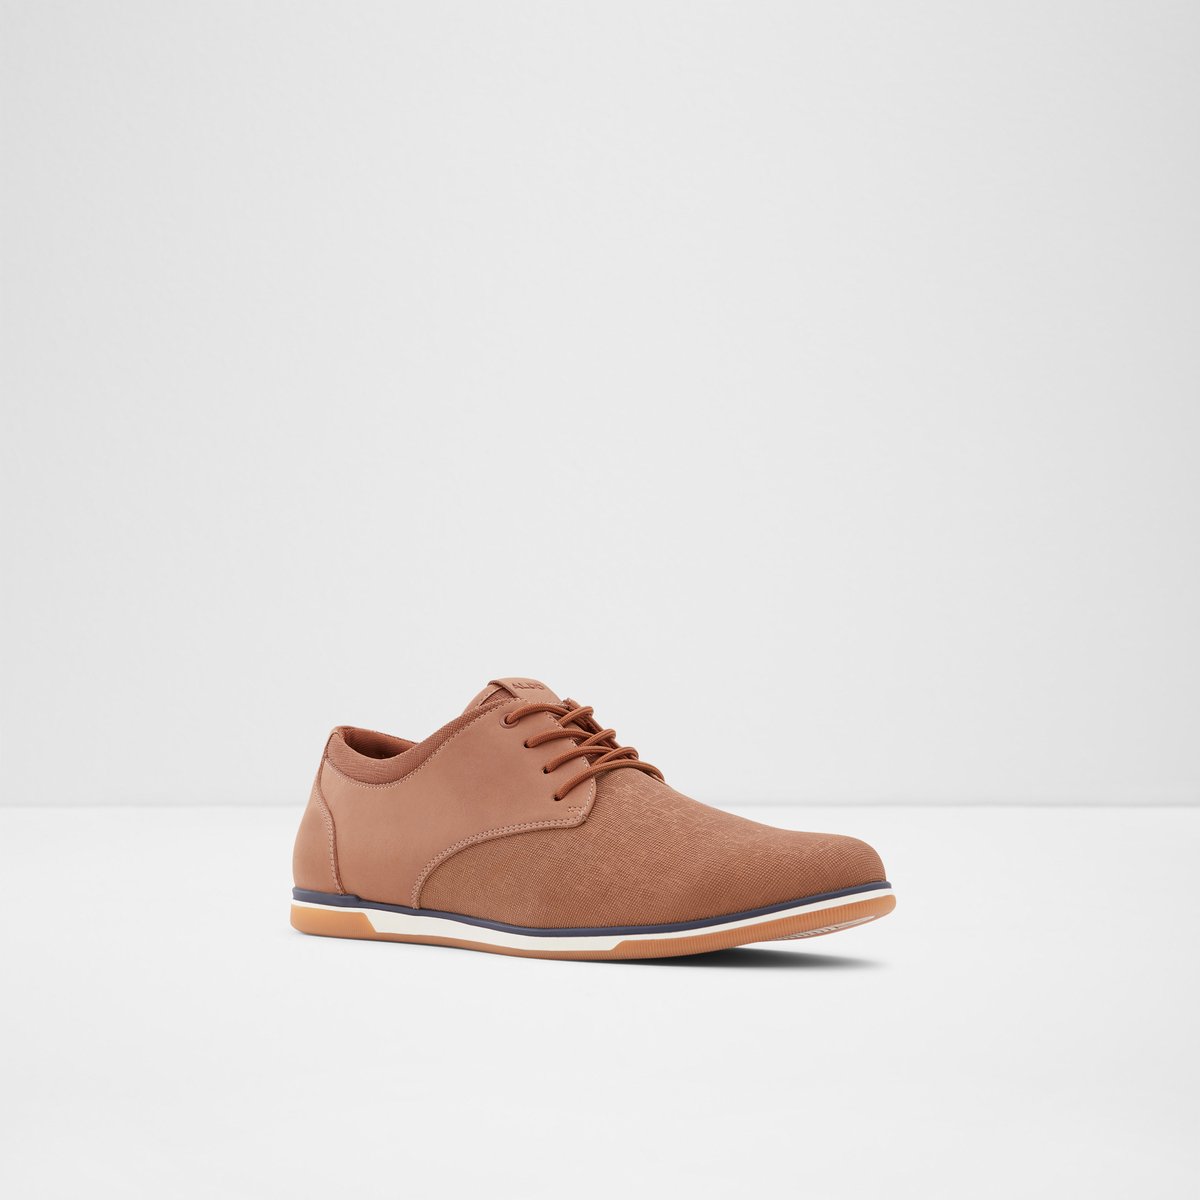 Heron Cognac Men's Casual Shoes | ALDO Canada